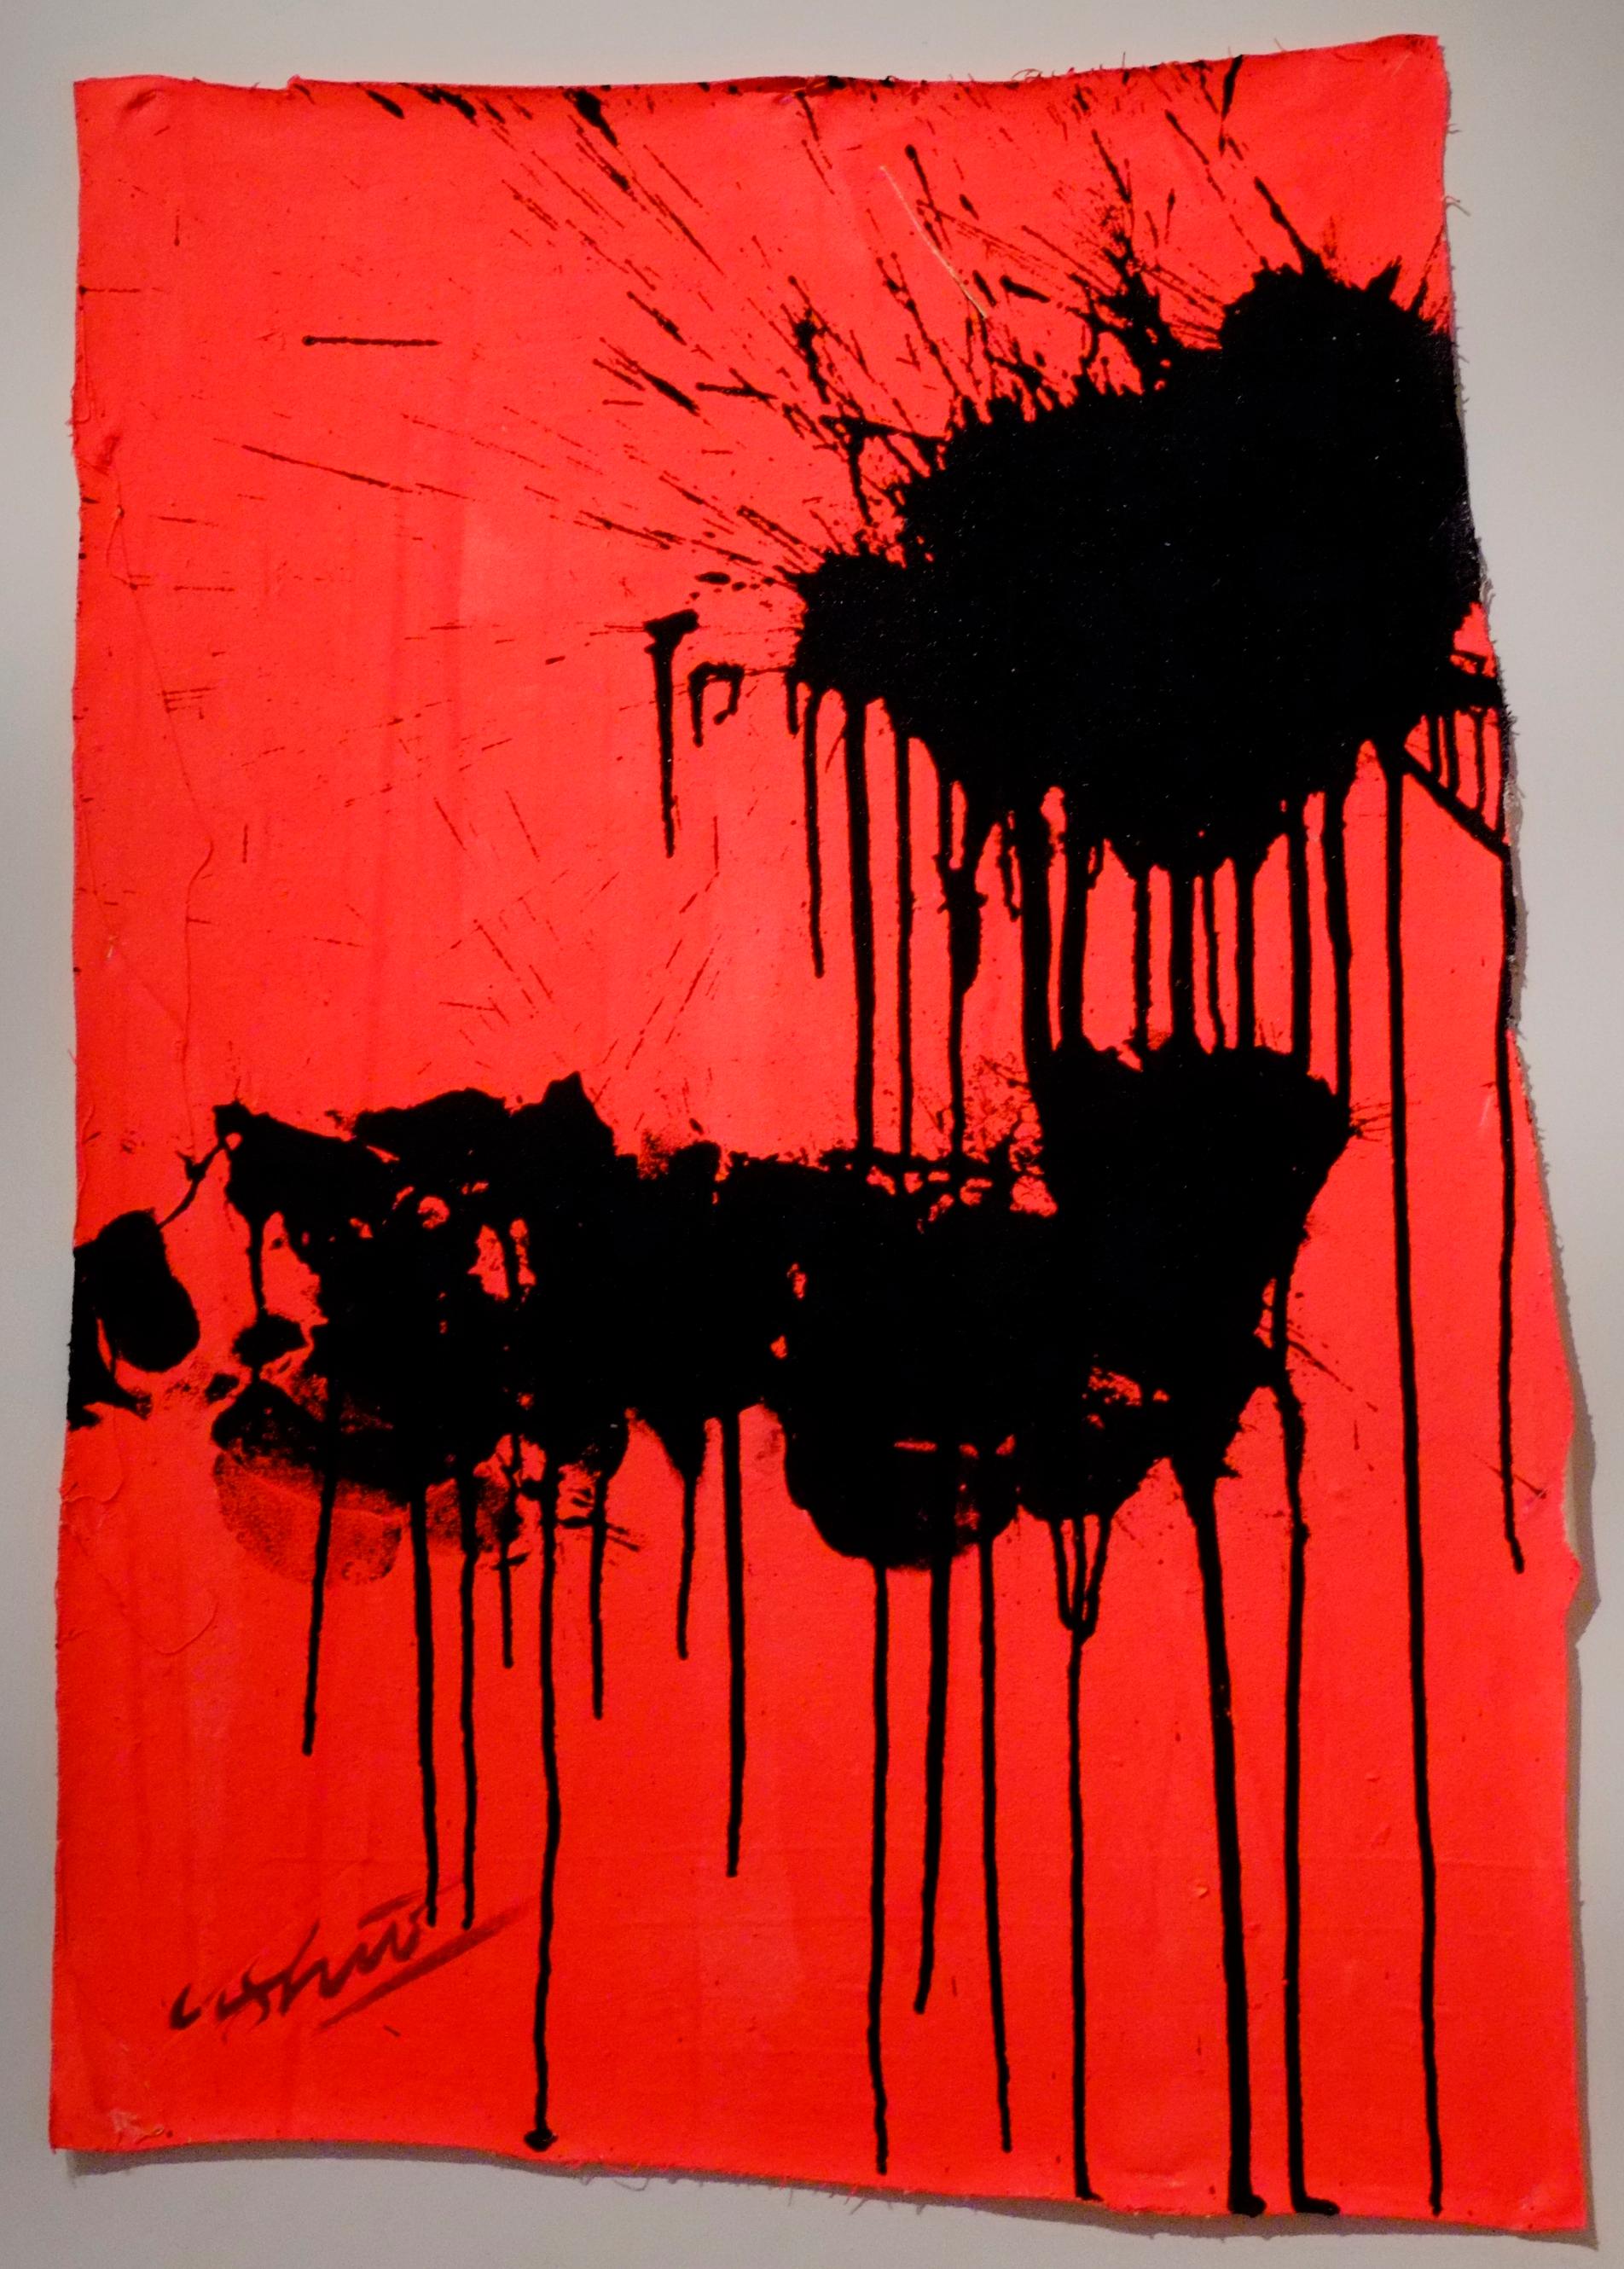 Abstract Painting Ushio Shinohara - "Noir sur rouge - 30 octobre 2012 " Acrylique sur toile - Peinture abstraite de boxe